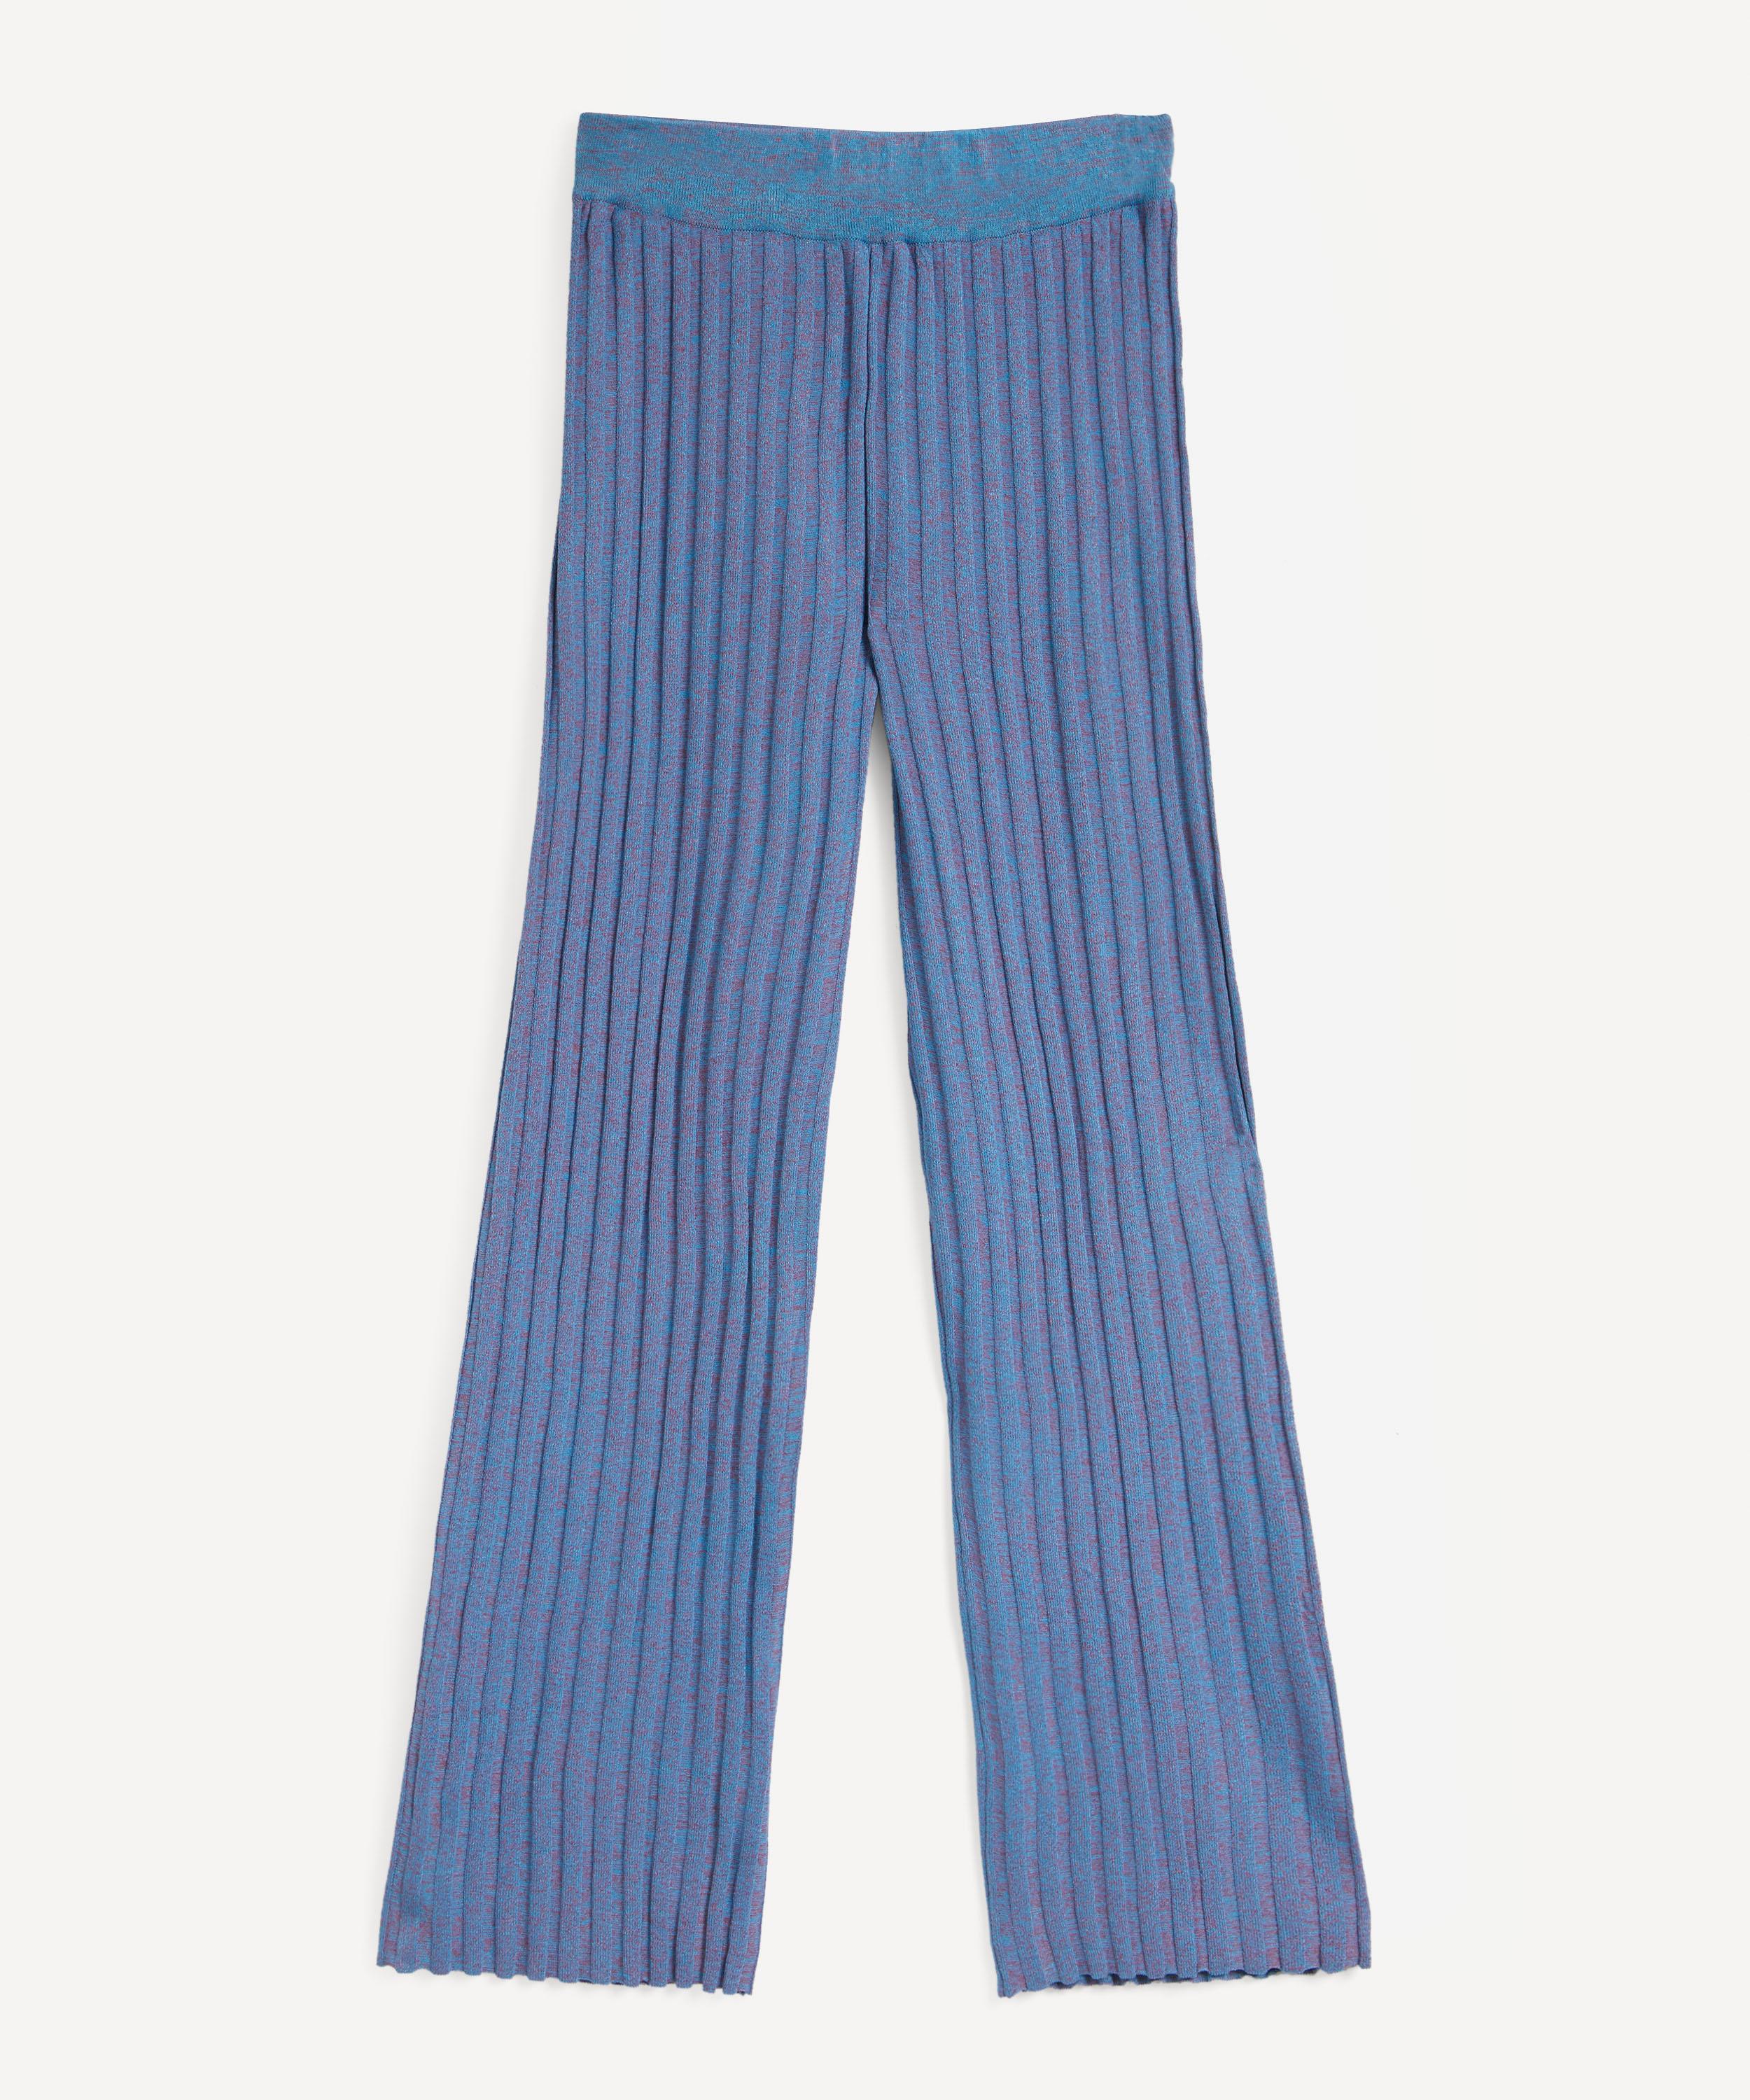 Paloma Wool Lohan Pants - Mosaic Blue